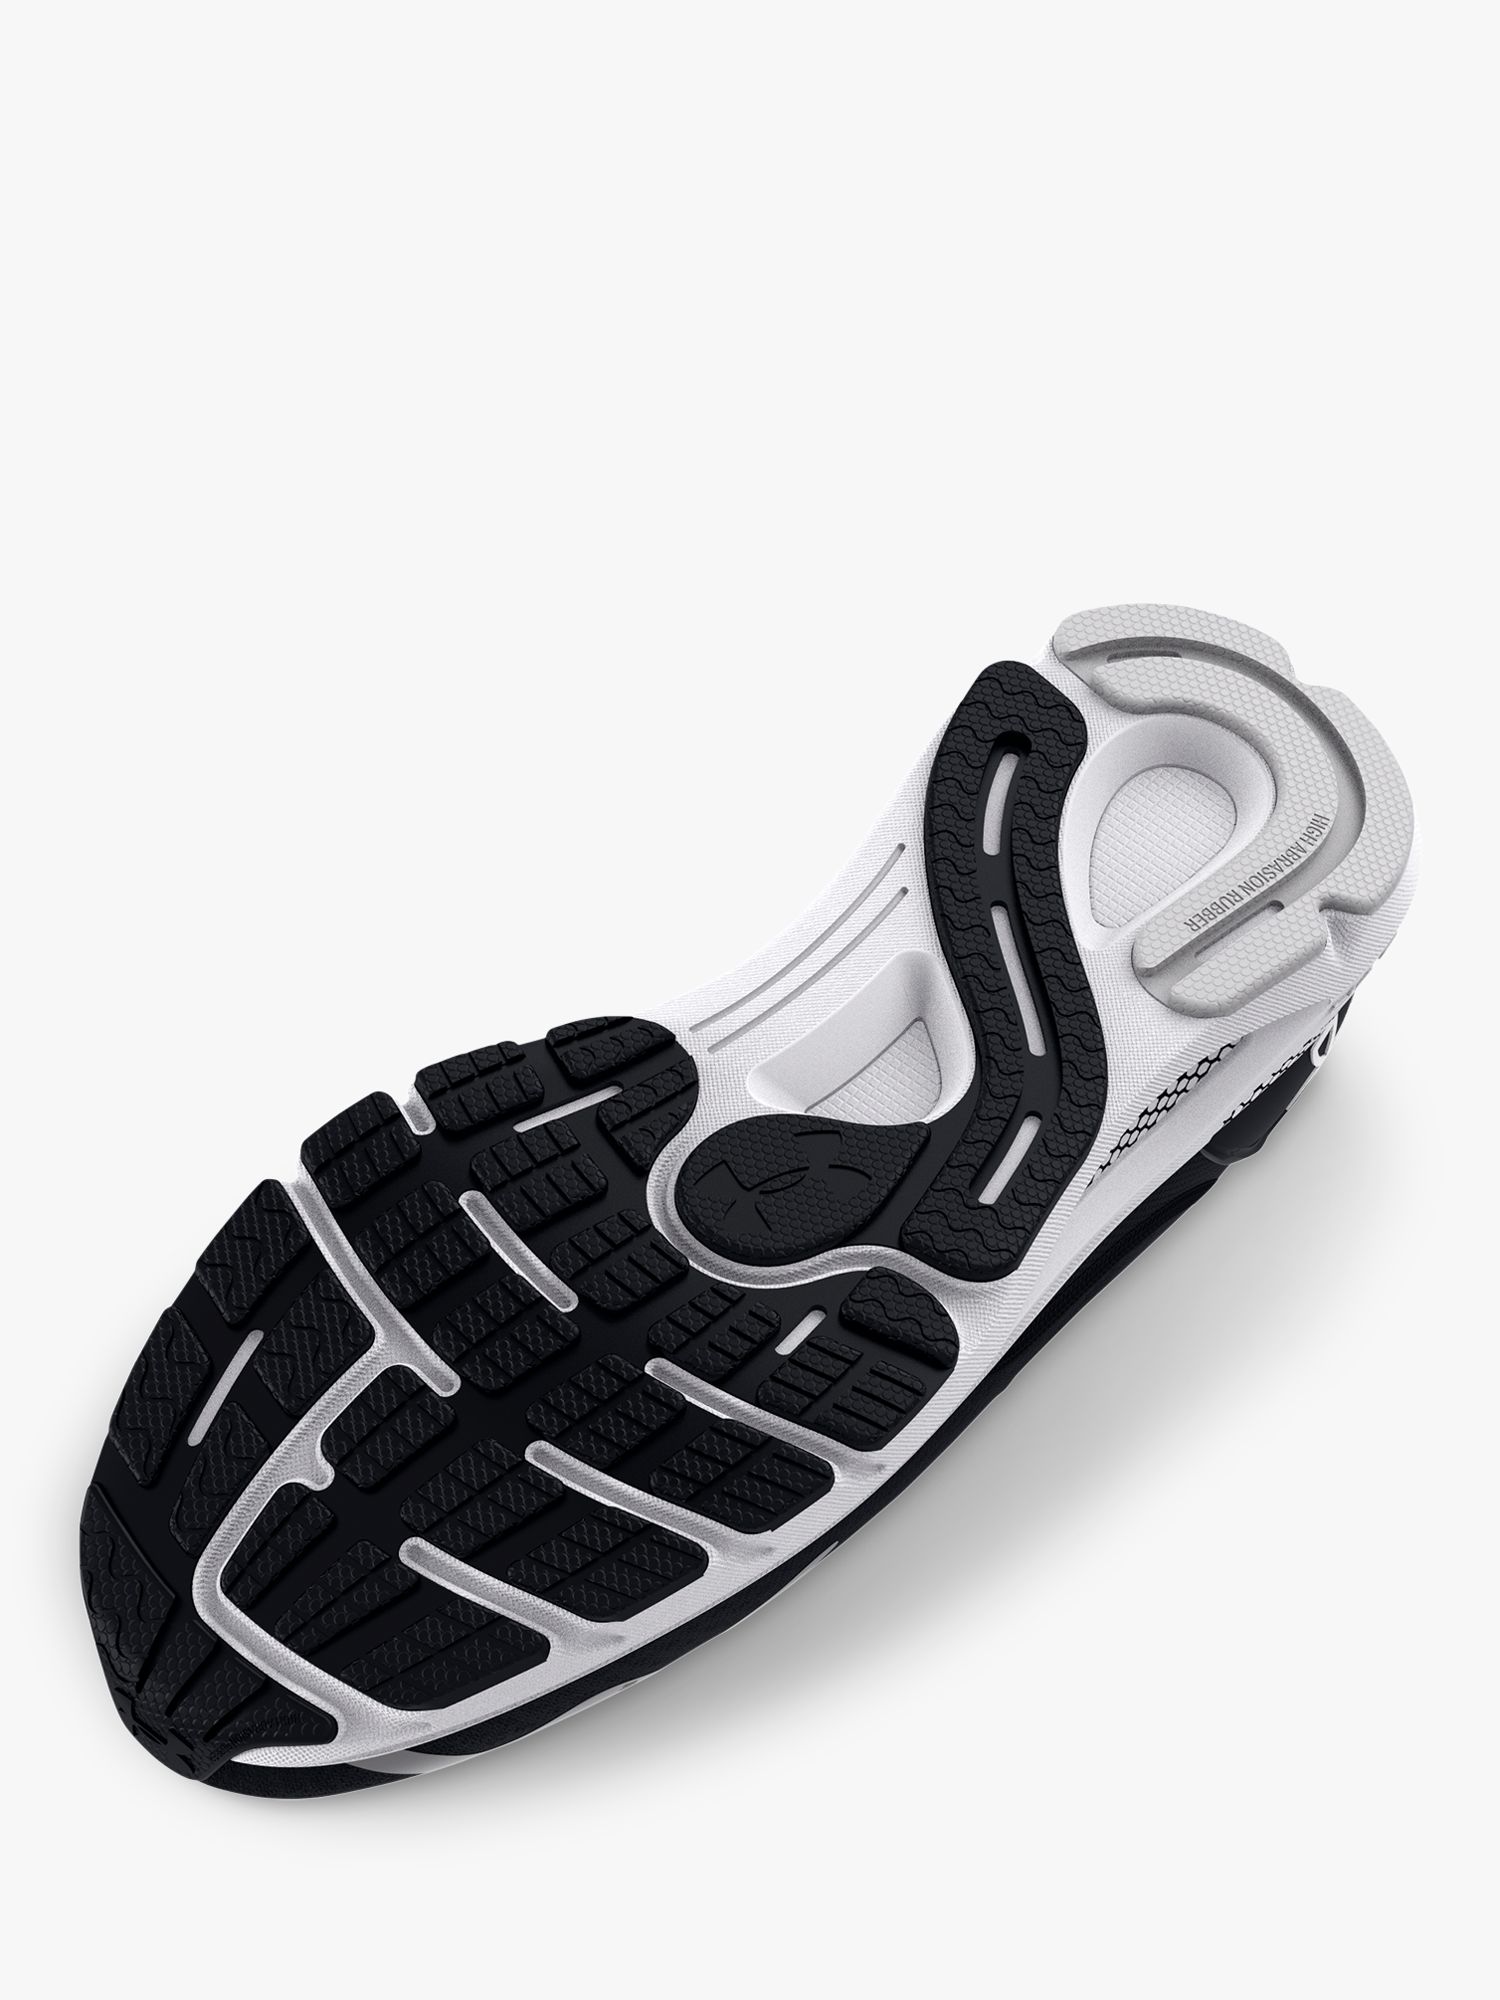 Under Armour HOVR Sonic 6 Men's Running Shoes, Black/White, 9